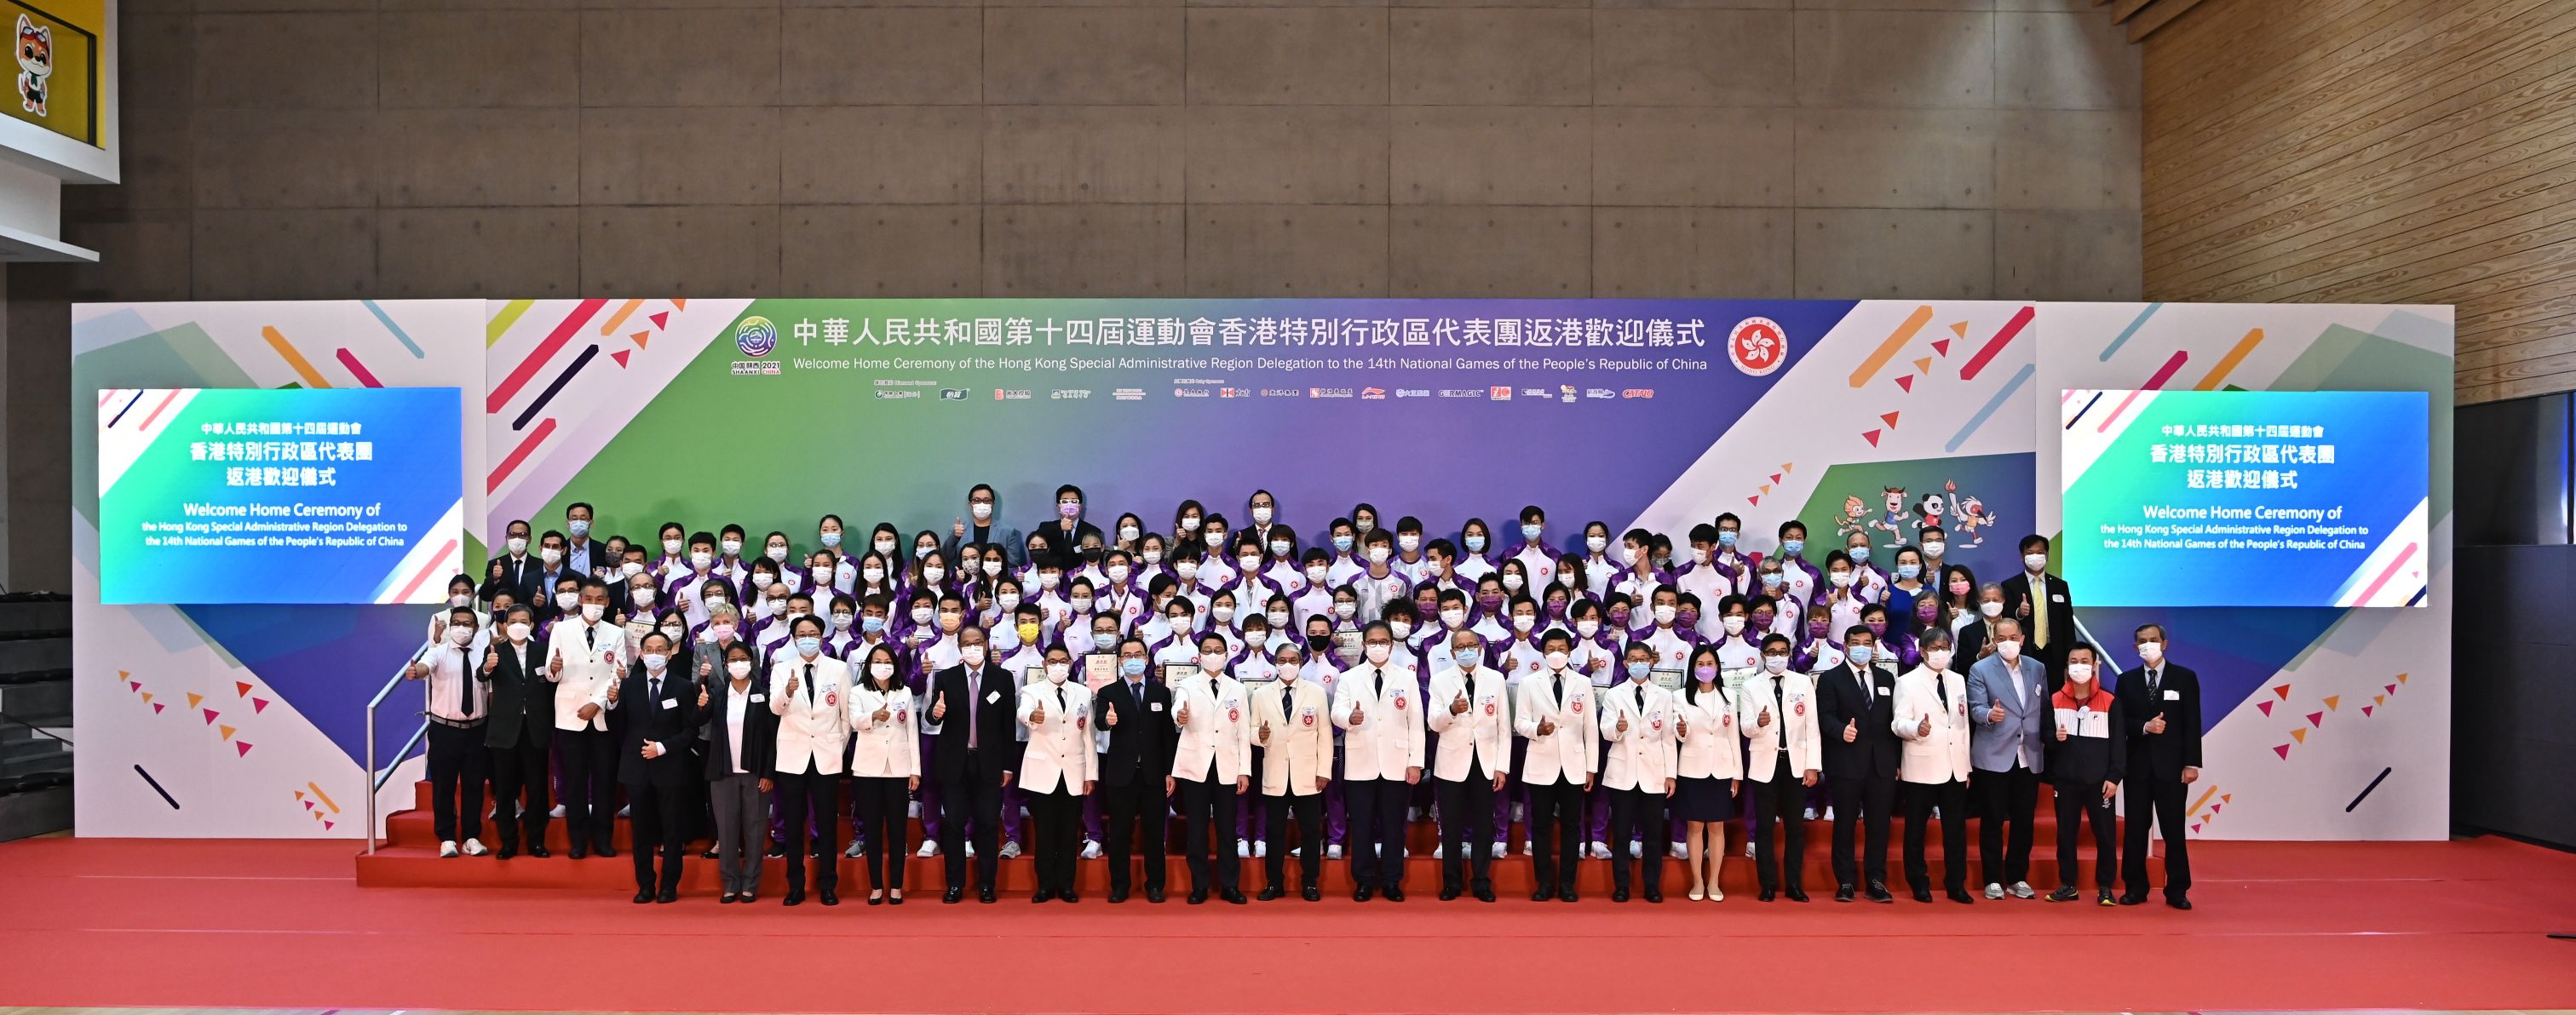 出席嘉宾于返港欢迎仪式与第十四届全国运动会香港特区代表团成员合照。